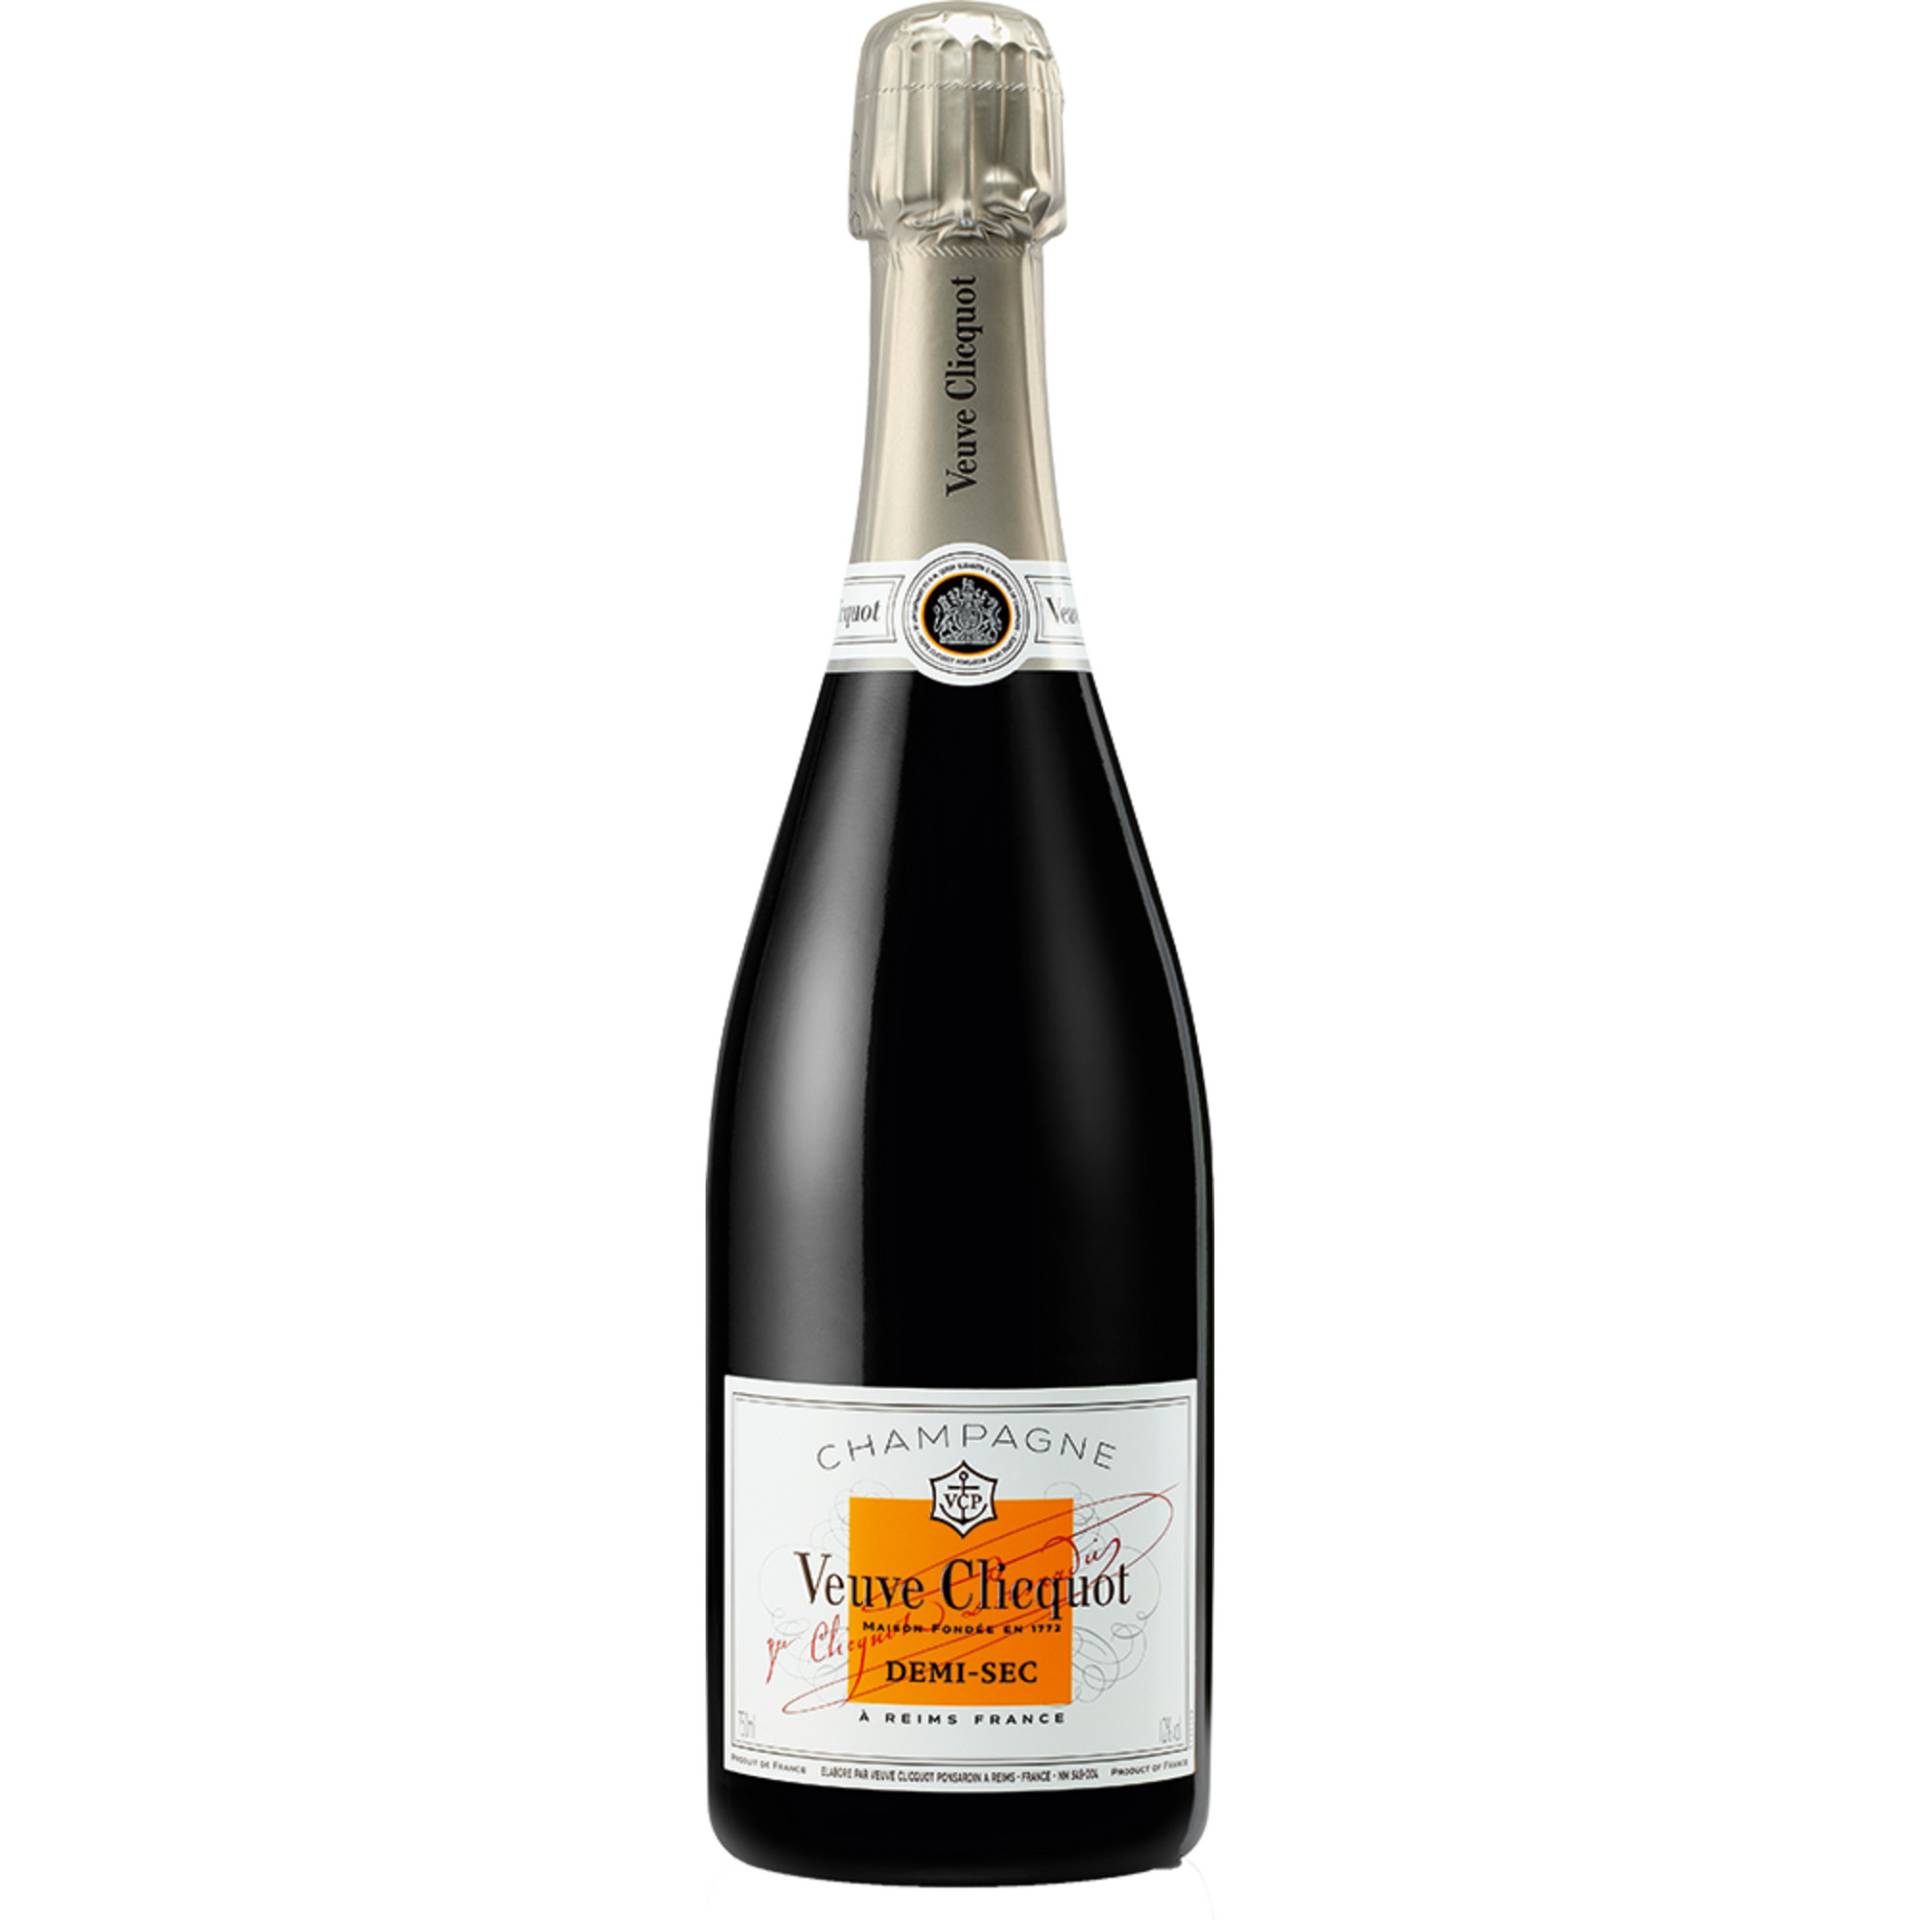 Champagne Veuve Clicquot, Demi-Sec, Champagne AC, Champagne, Schaumwein von Moet Hennessy Deutschland GmbH, Seidlstr. 23 80335 München